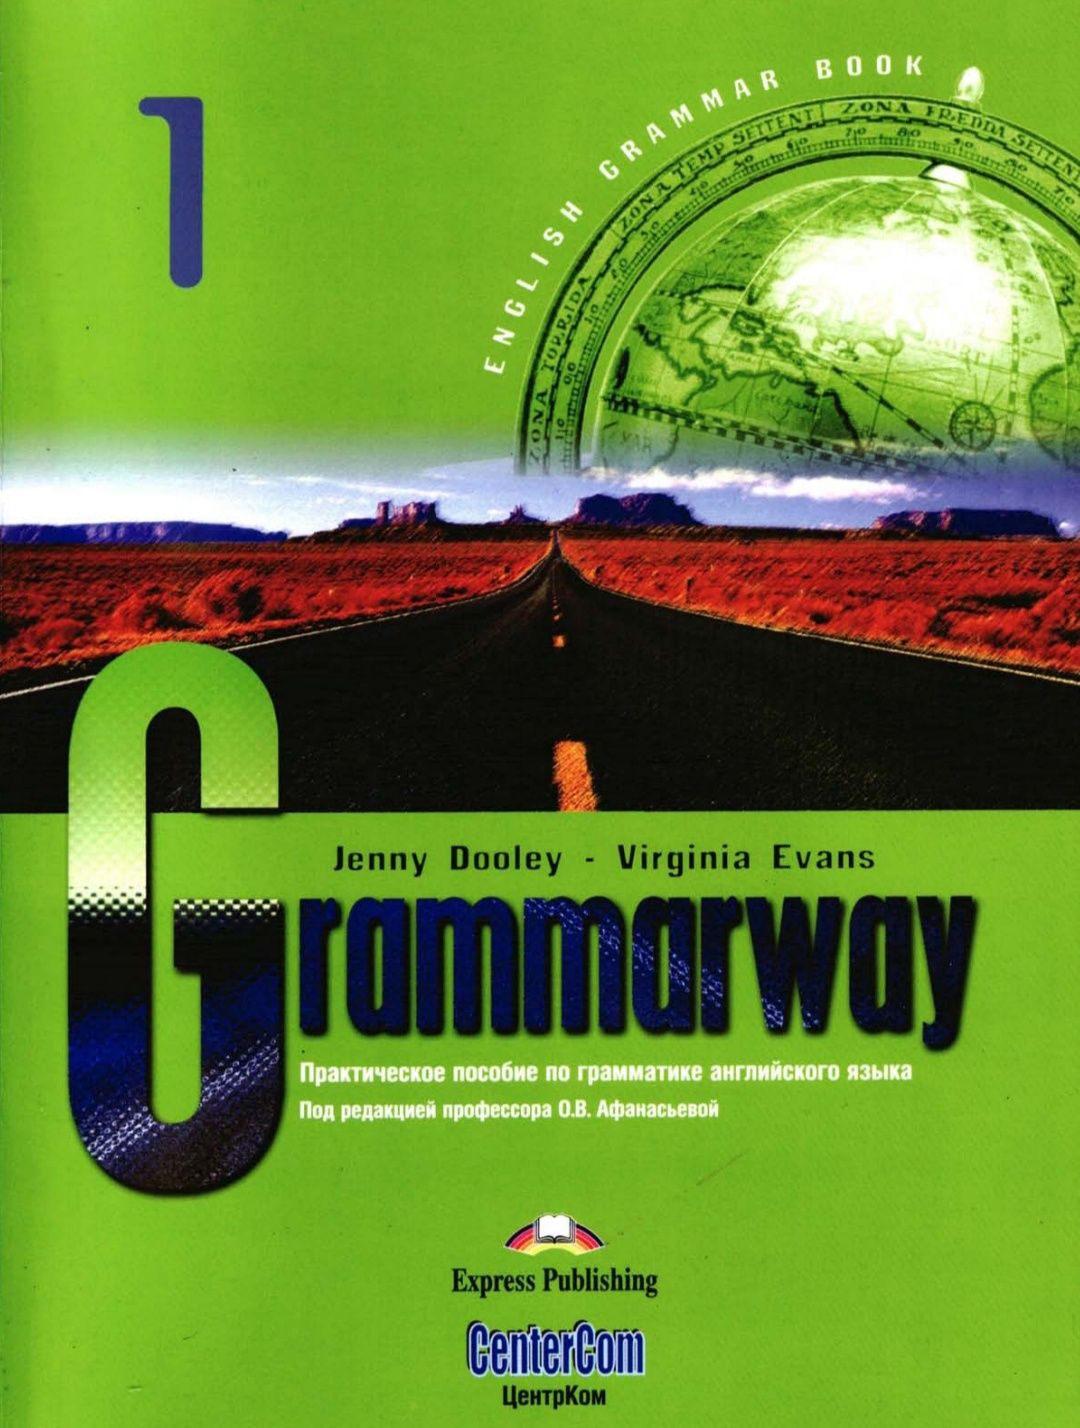 Grammarway 1, 2, 3, 4 формат А4.